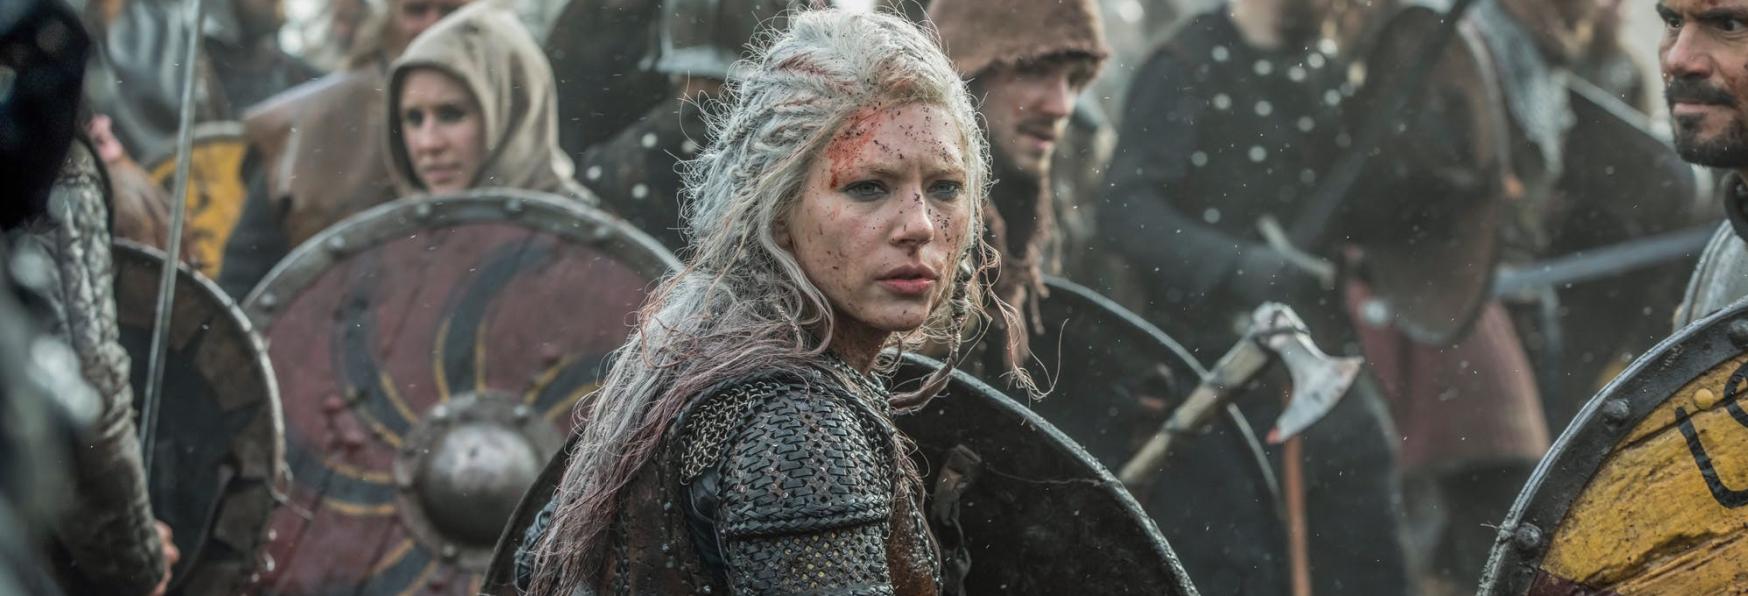 Vikings: Netflix ha annunciato uno Spin-off della Serie TV intitolato Valhalla